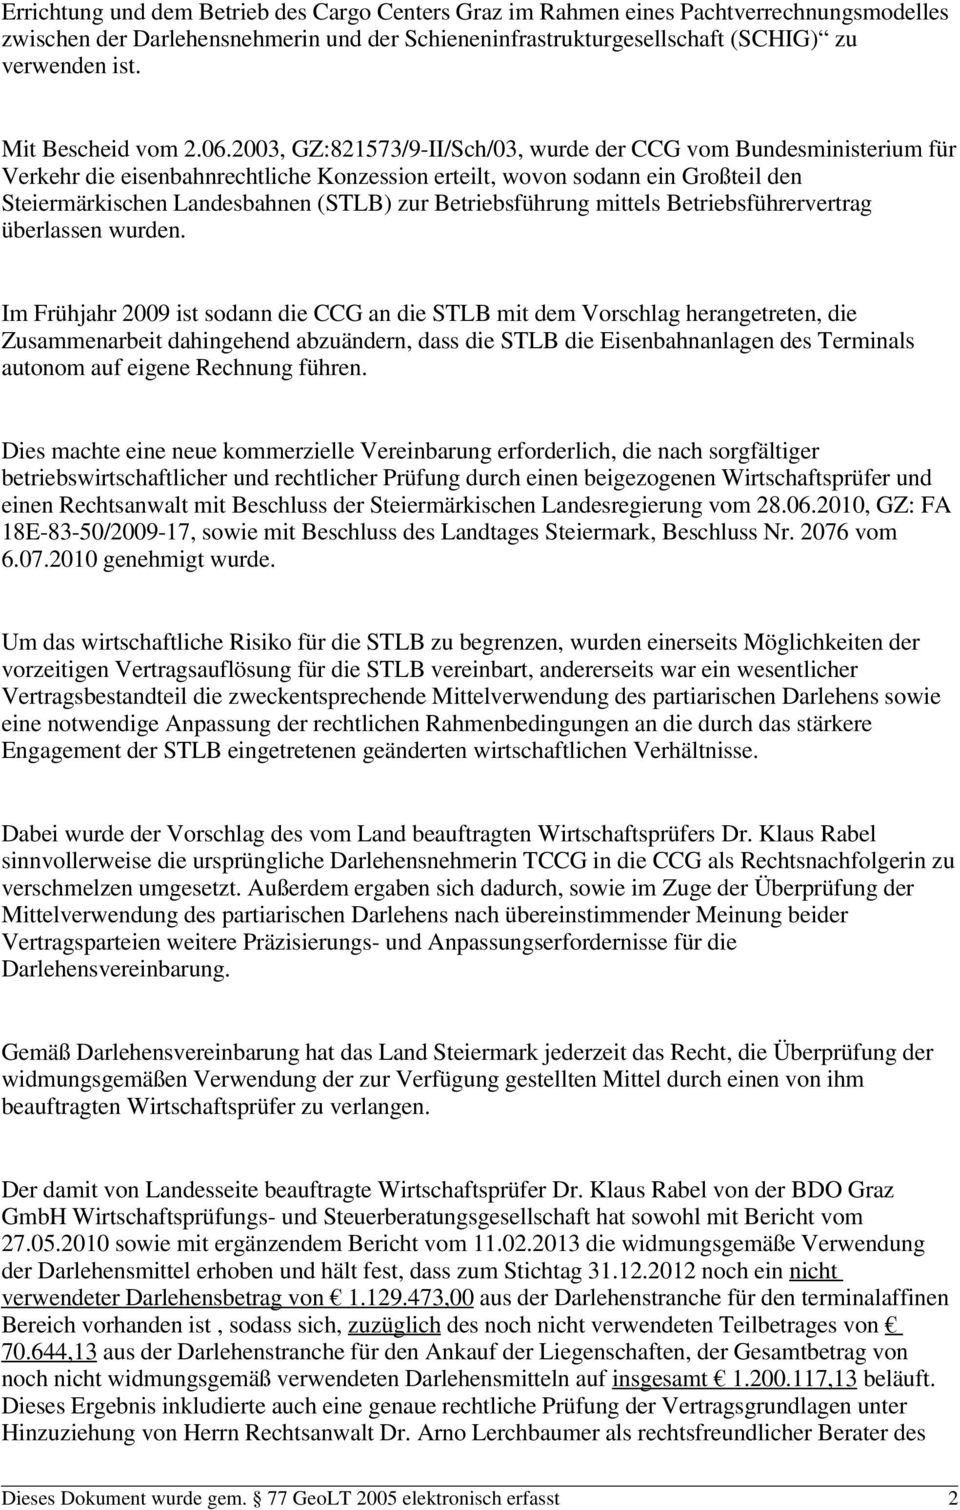 2003, GZ:821573/9-II/Sch/03, wurde der CCG vom Bundesministerium für Verkehr die eisenbahnrechtliche Konzession erteilt, wovon sodann ein Großteil den Steiermärkischen Landesbahnen (STLB) zur